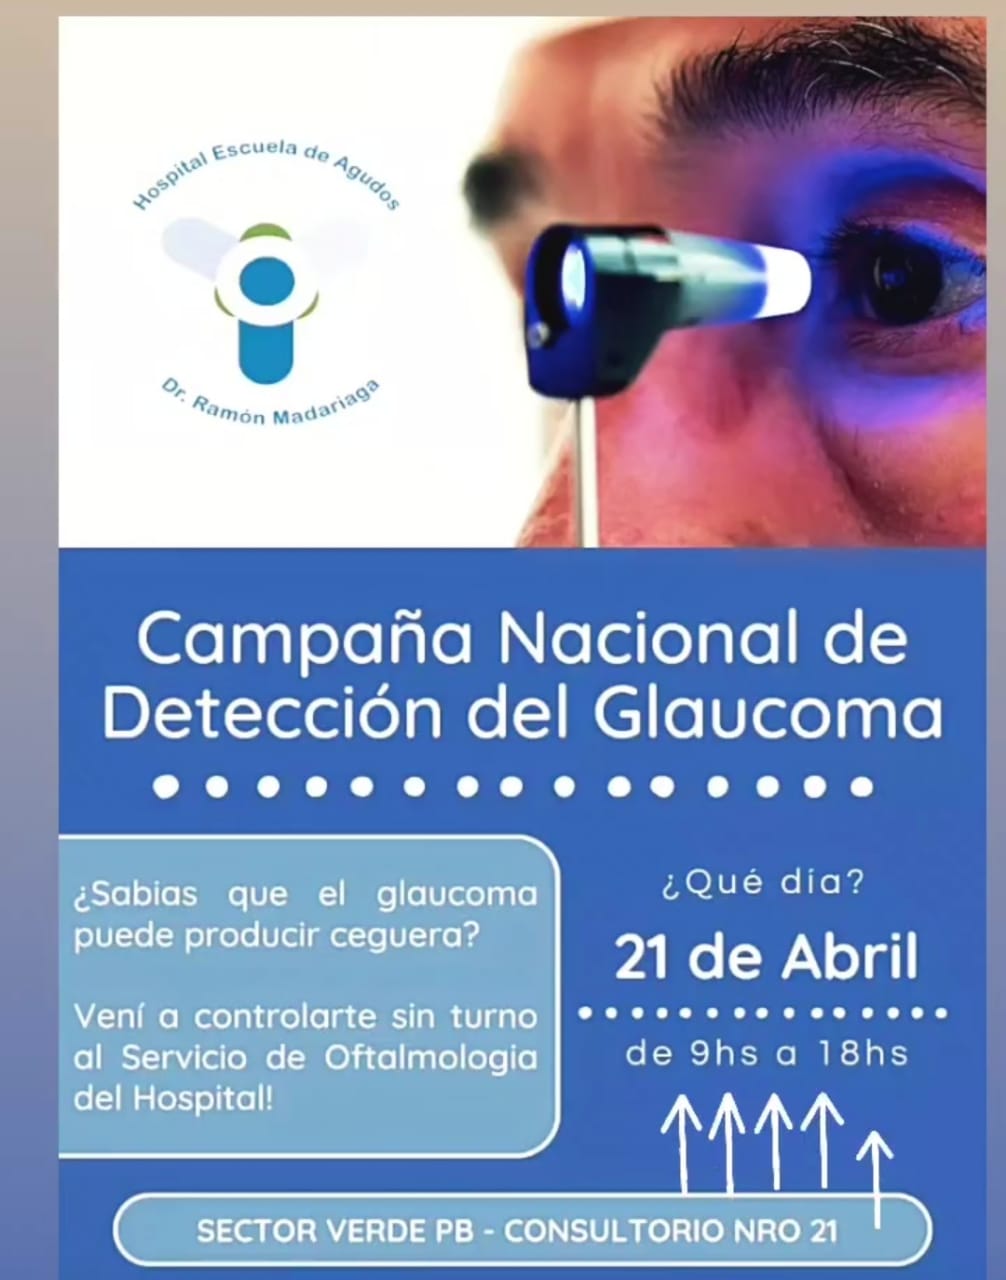 Hospital Escuela: El 21 de abril habilitarán un consultorio para la detección de glaucoma imagen-2